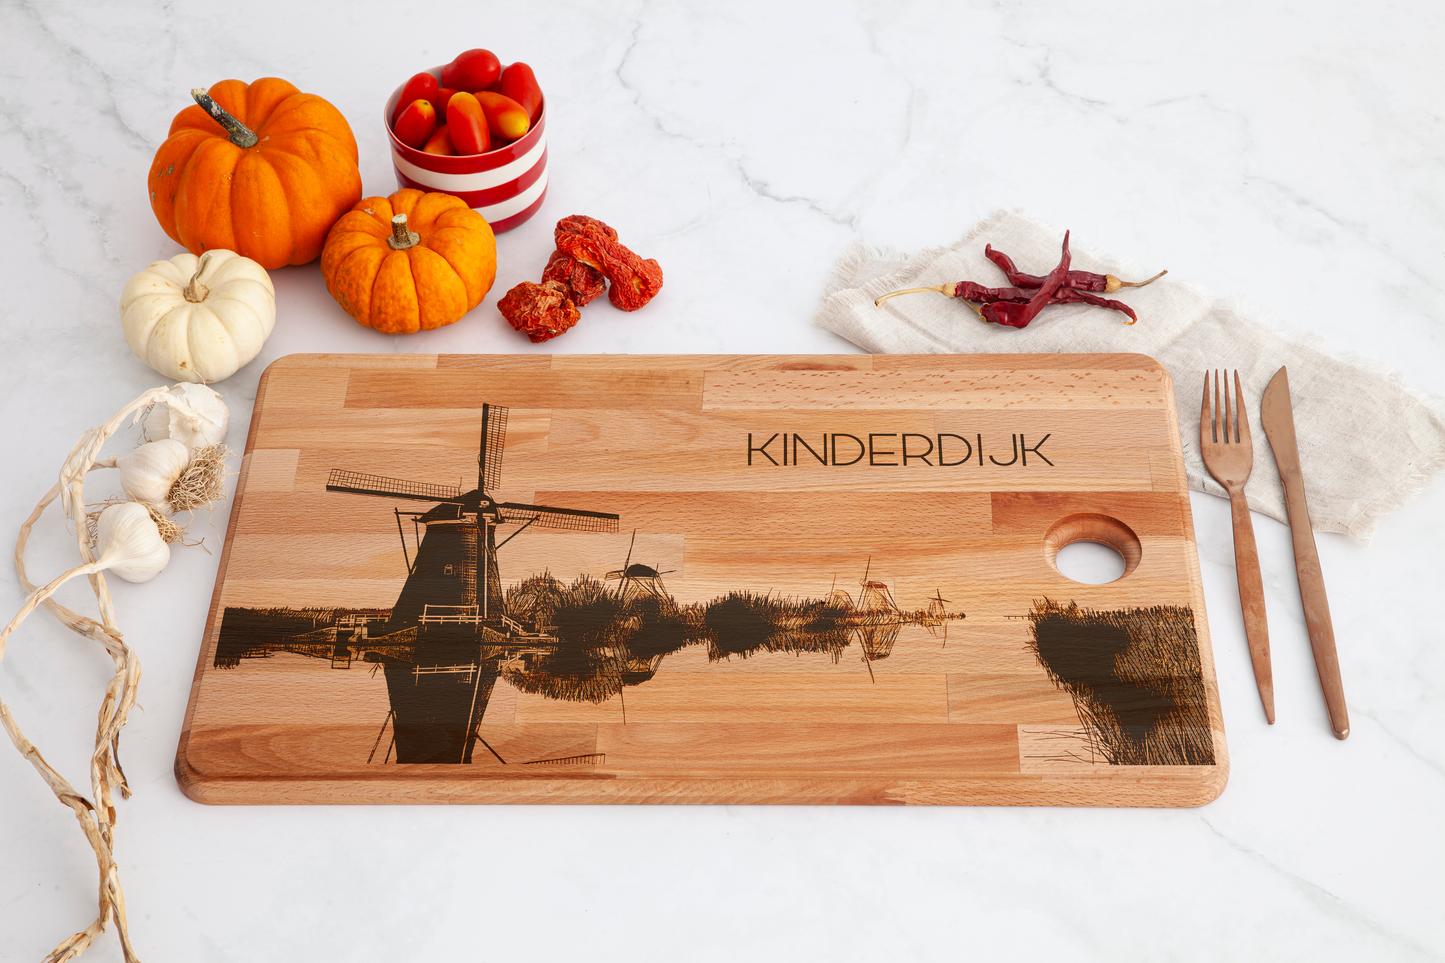 Rotterdam, Kinderdijk, cutting board, with knife